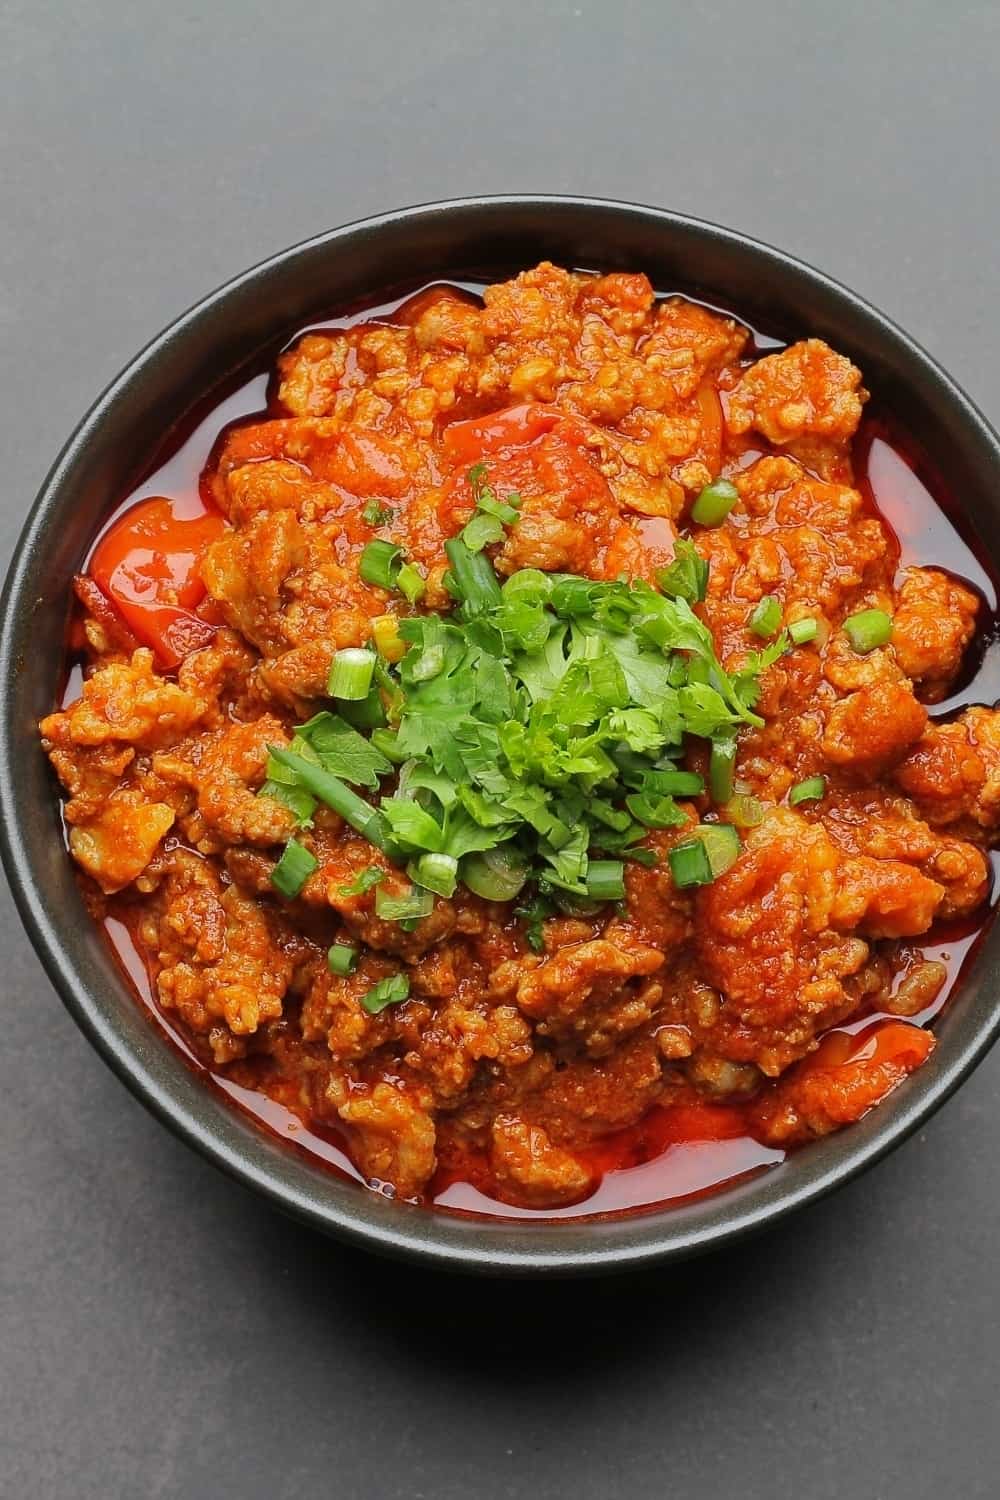 Chili dish in plate